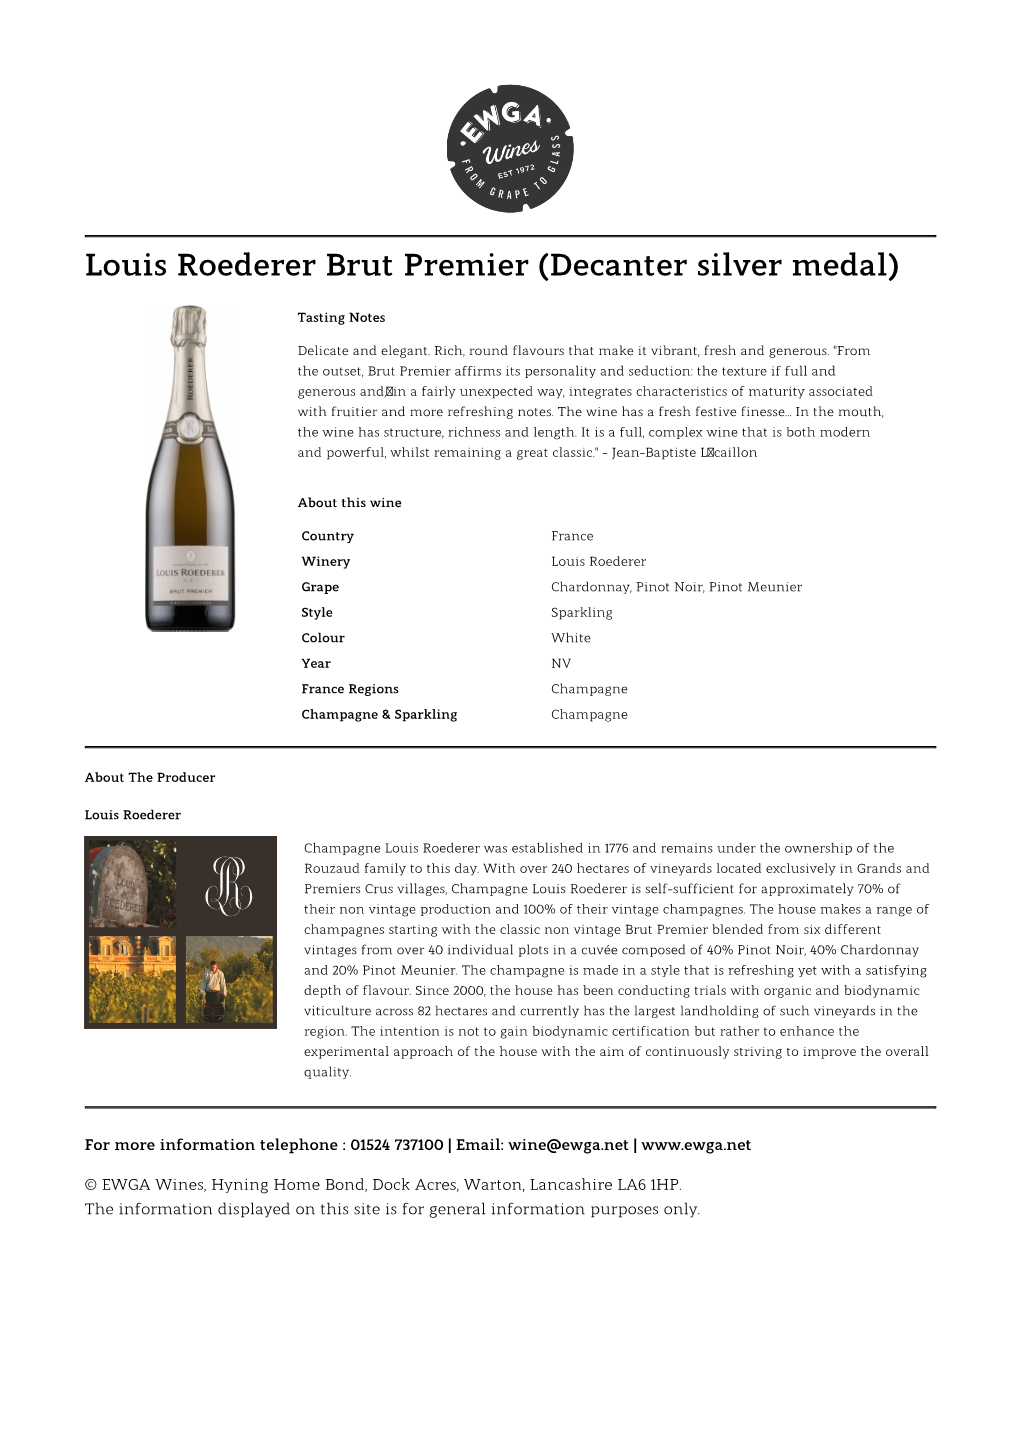 Louis Roederer Brut Premier (Decanter Silver Medal)